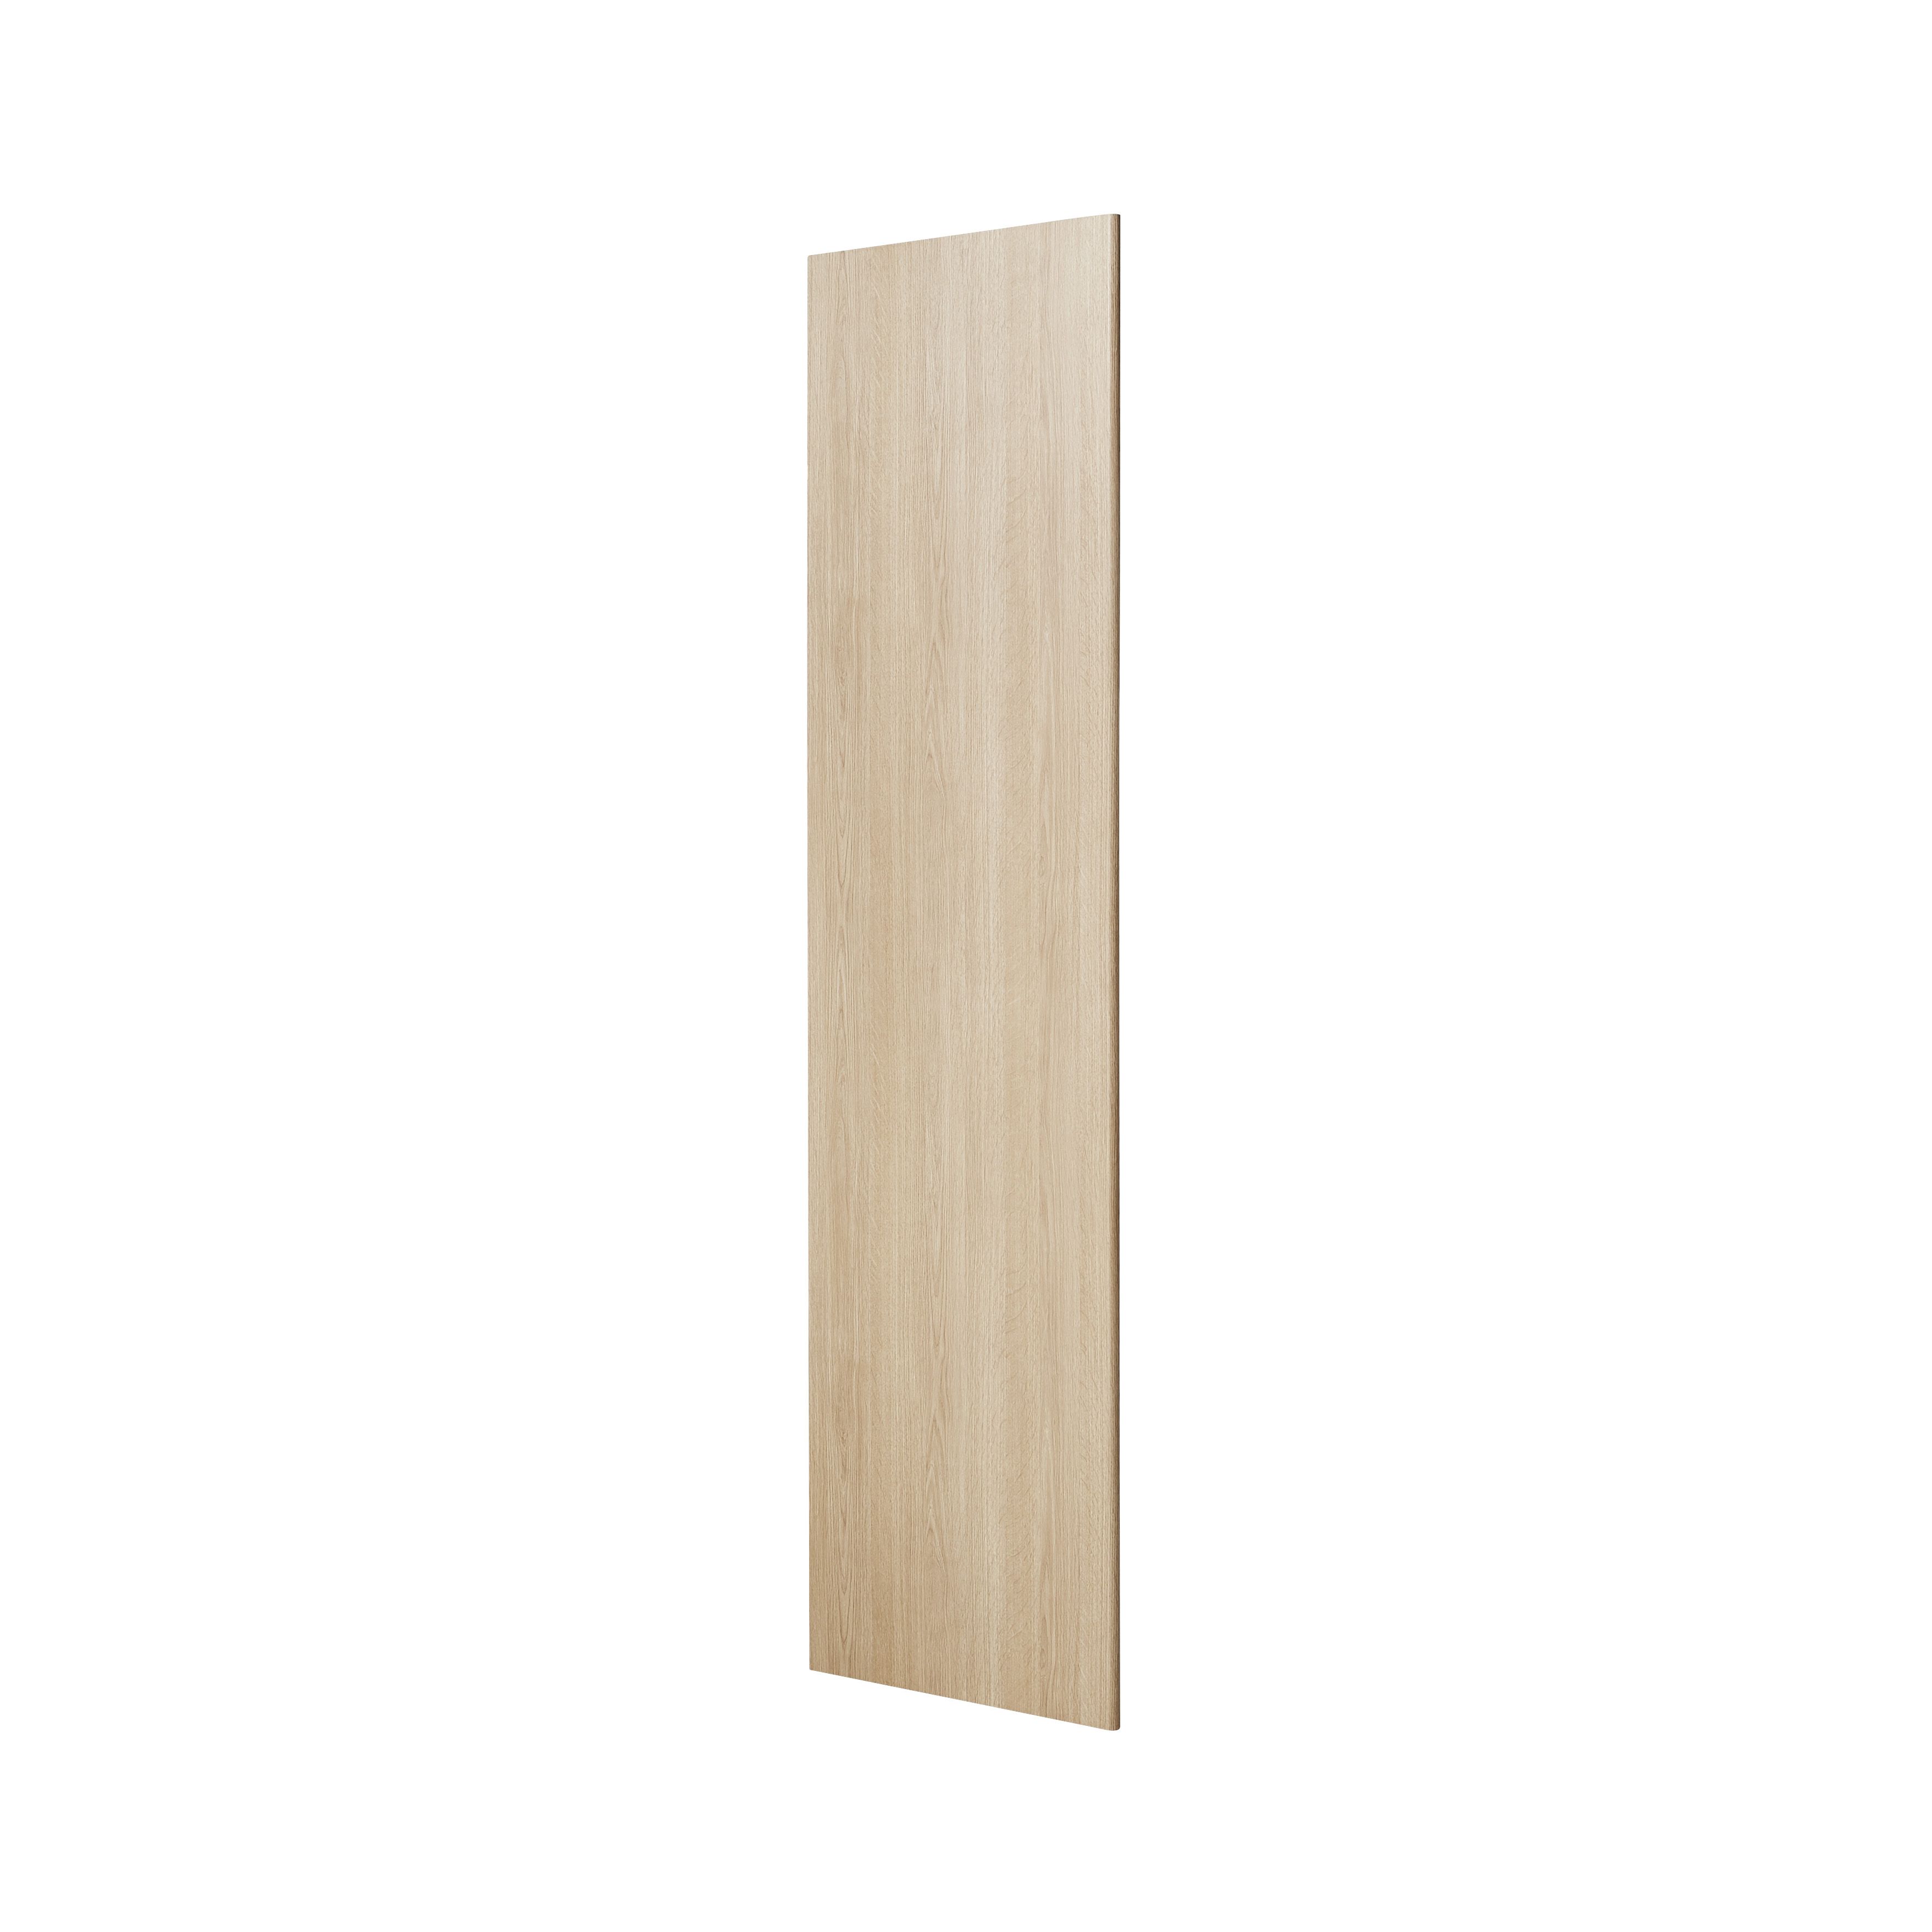 GoodHome Alpinia Oak effect shaker Tall Appliance & larder Clad on end panel (H)2400mm (W)610mm